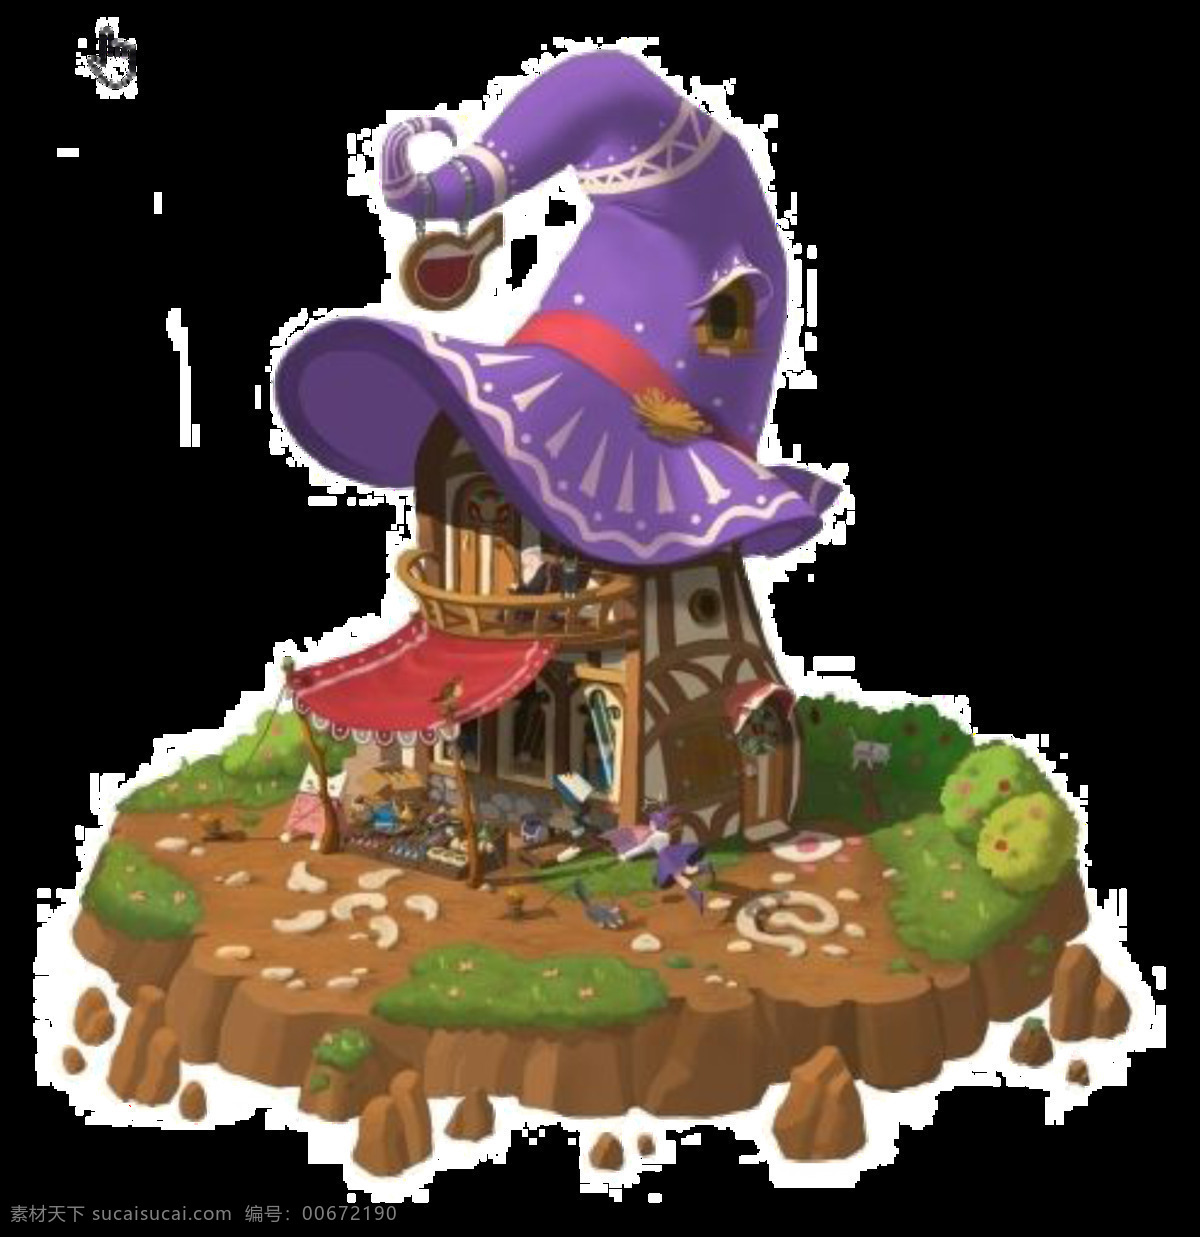 紫色 帽子 童话 城堡 图案 彩绘素材 帽子城堡 童话屋 透明素材 装饰图片